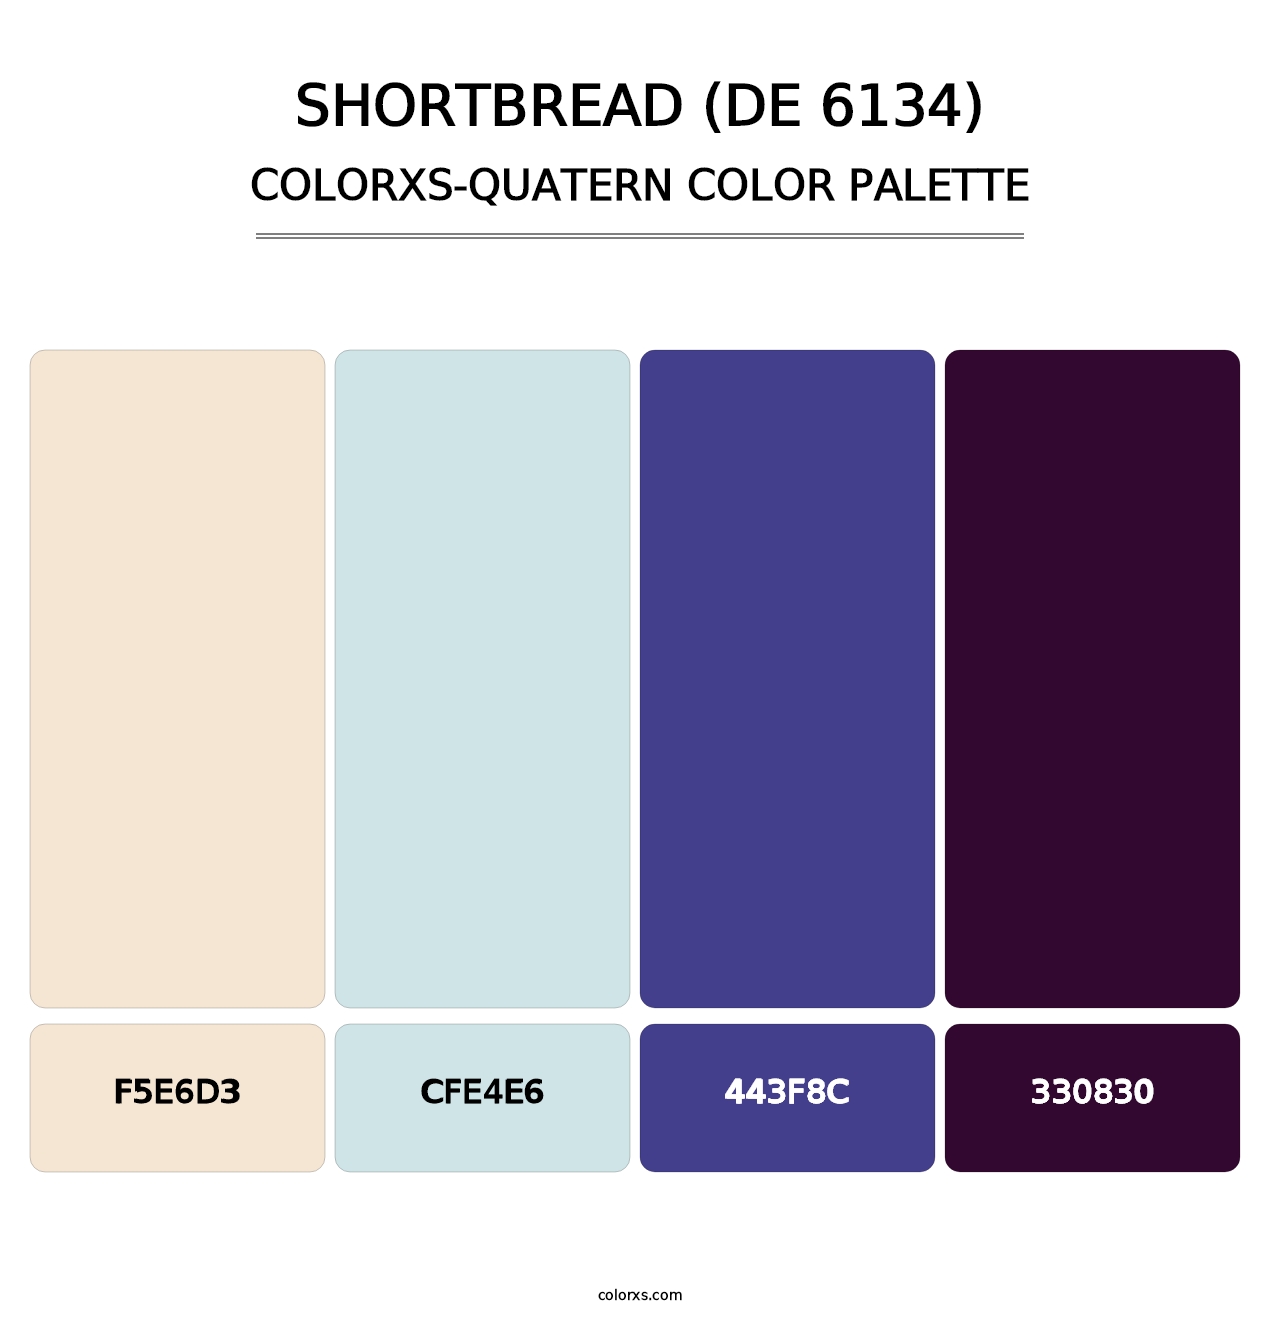 Shortbread (DE 6134) - Colorxs Quatern Palette